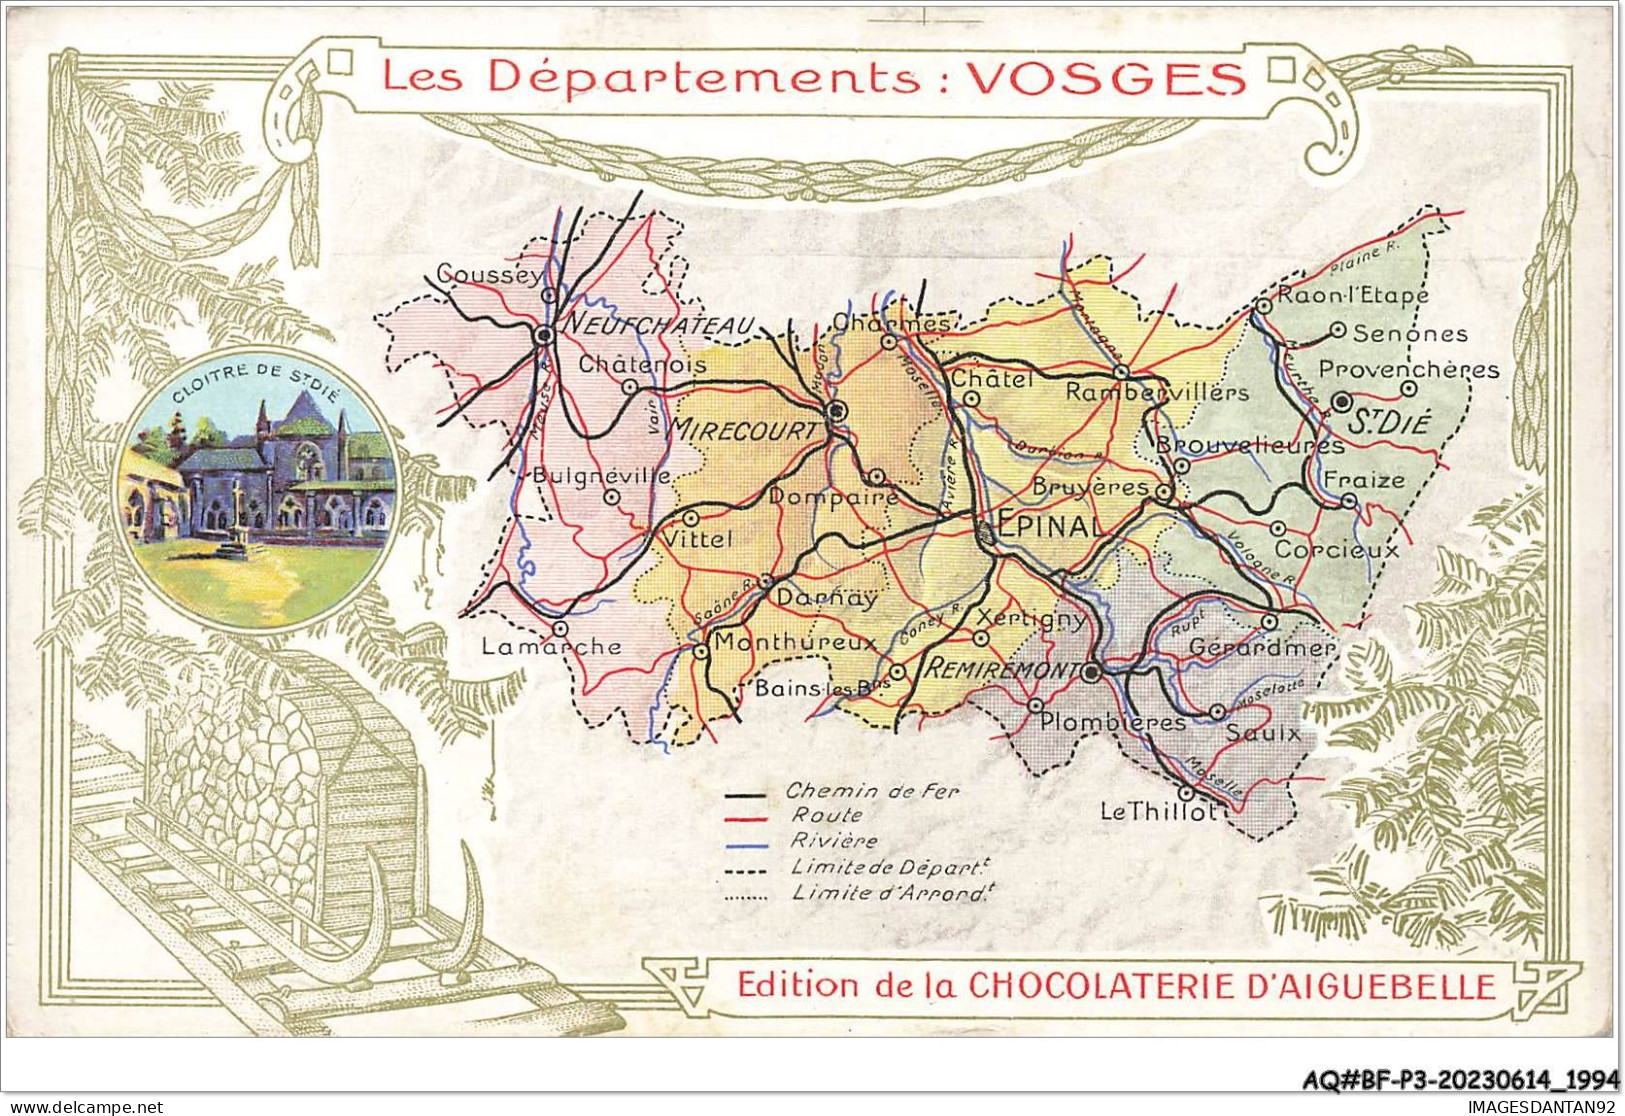 AQ#BFP3-CHROMOS-0995  - CHOCOLAT D'AIGUEBELLE - Les Départements - Vosges - Aiguebelle